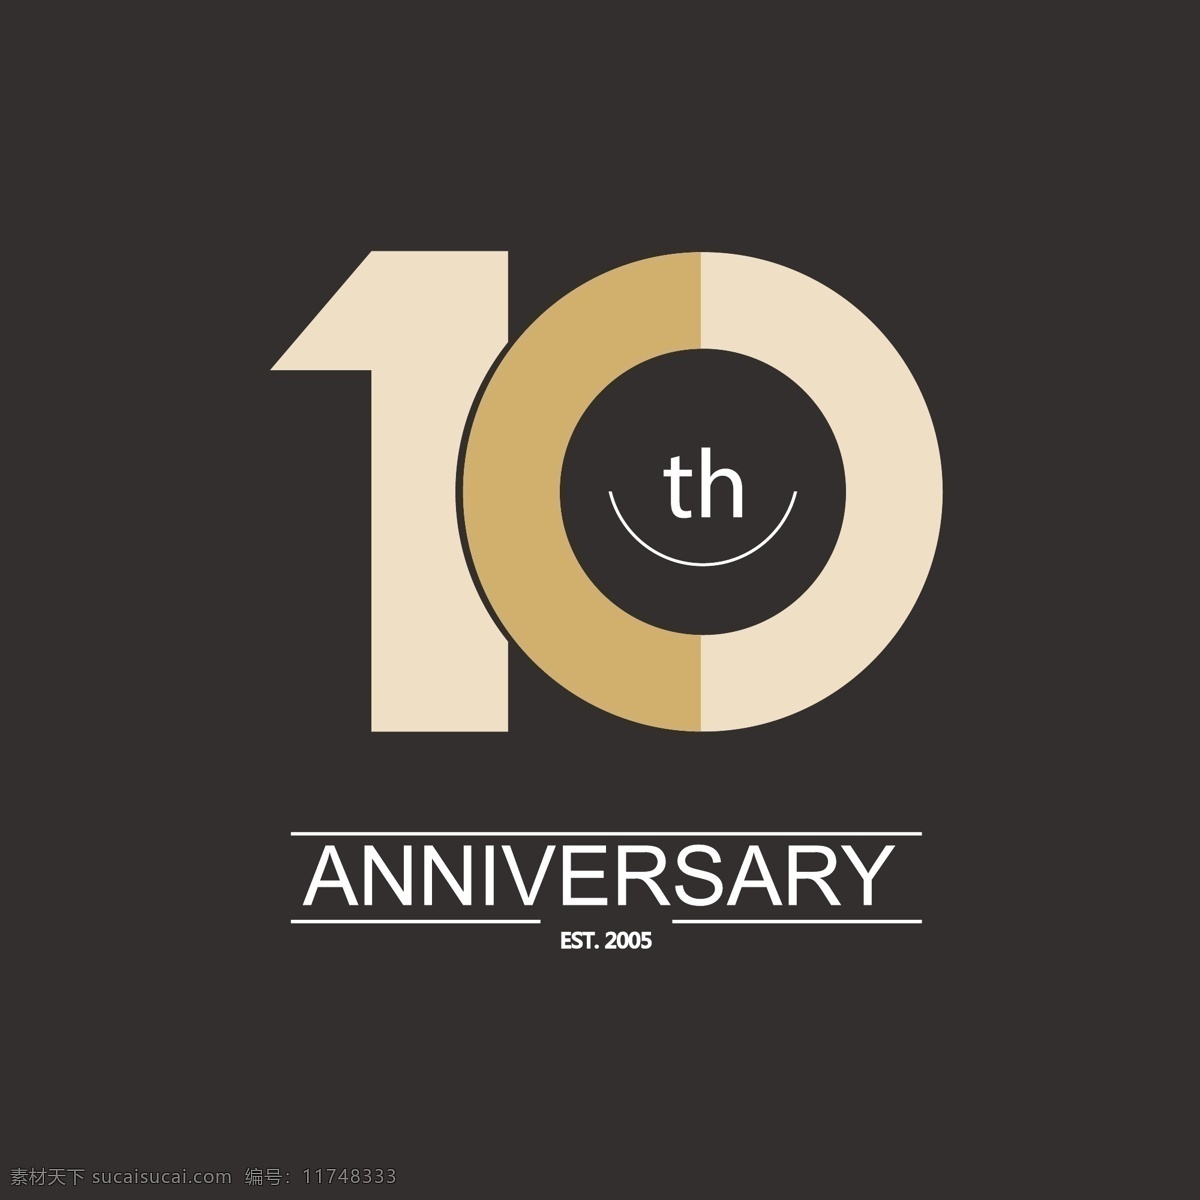 10周年标签 10周年庆典 周年庆数字 十周年 10周年 数字标签 周年庆标签 周年庆典 扁平化元素 圆形图标 黑色